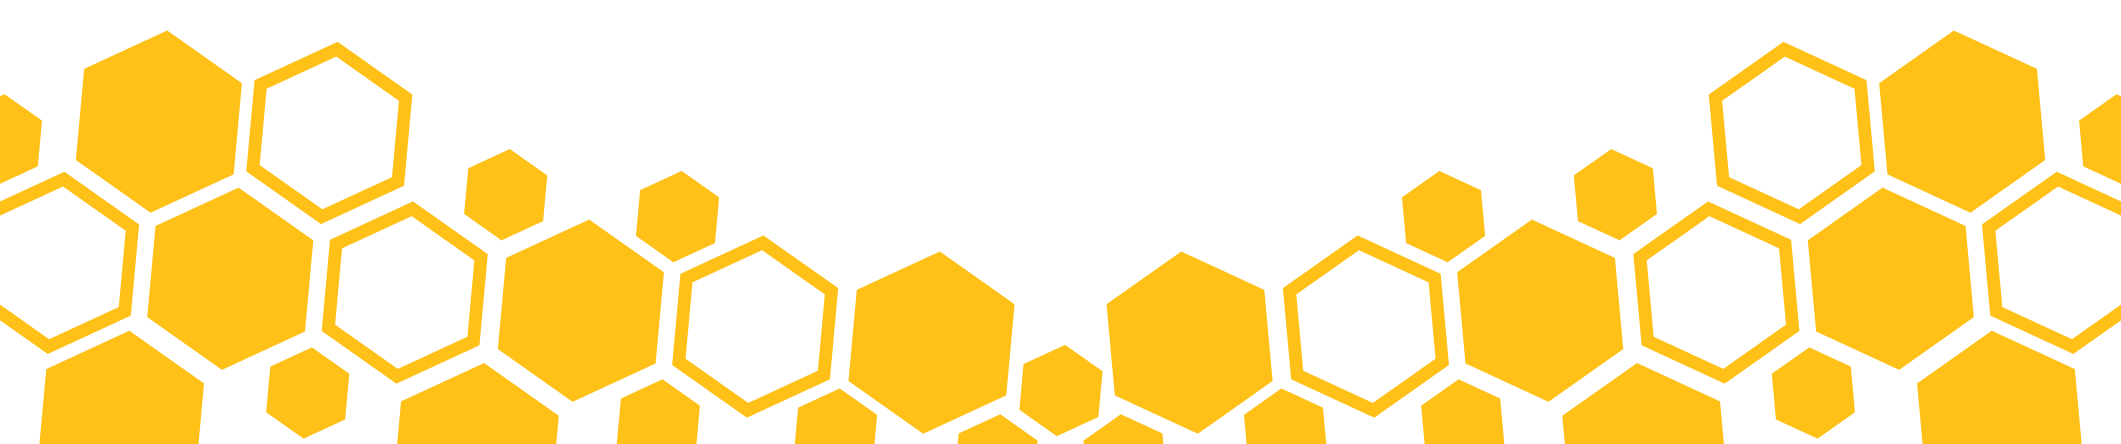 yellow hexagon slider